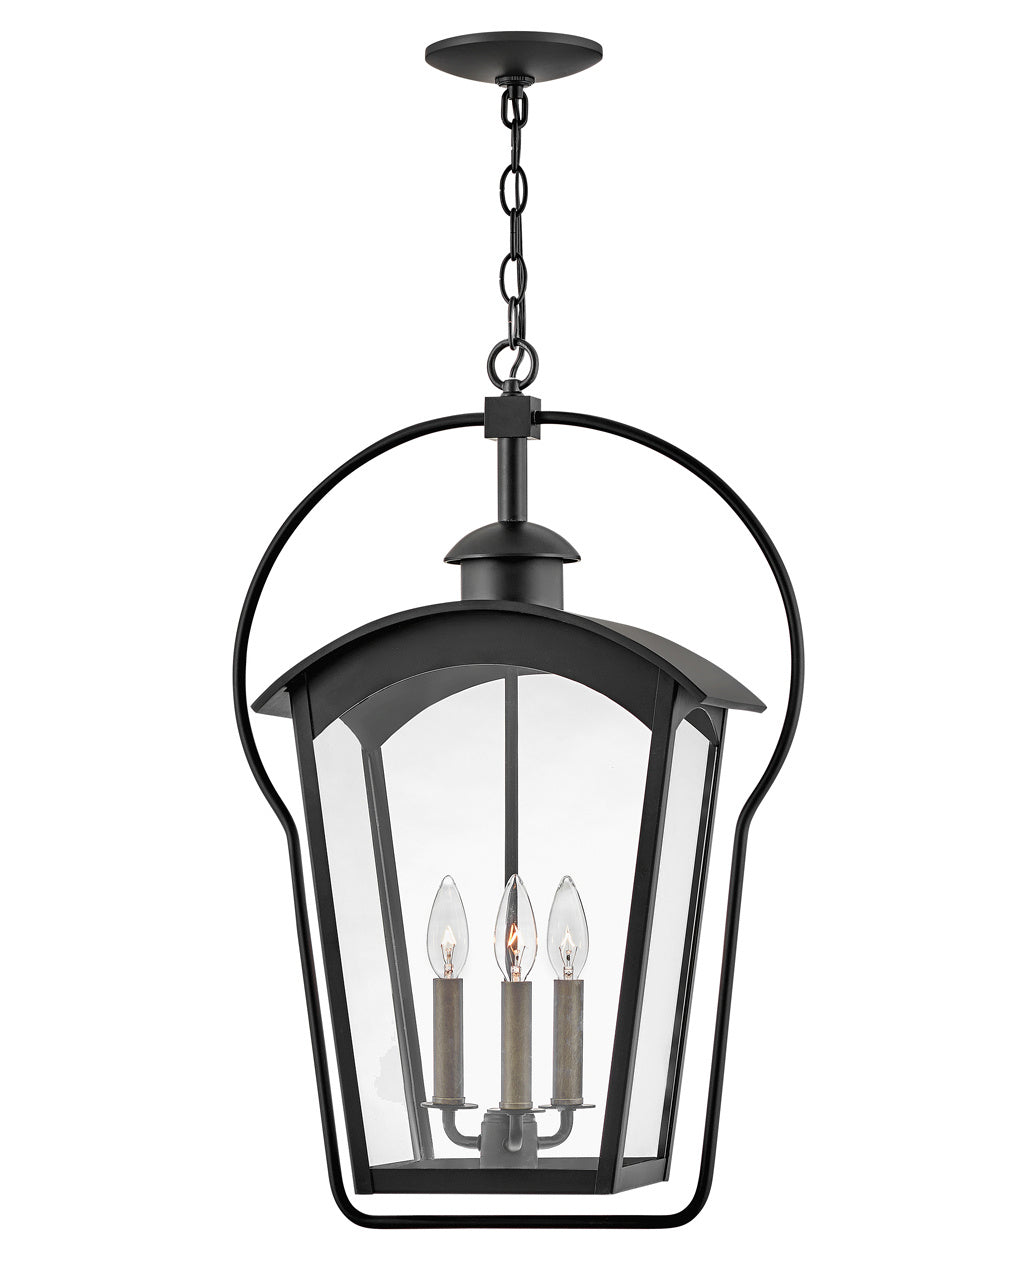 Hinkley Canada - LED Hanging Lantern - Yale - Black- Union Lighting Luminaires Decor